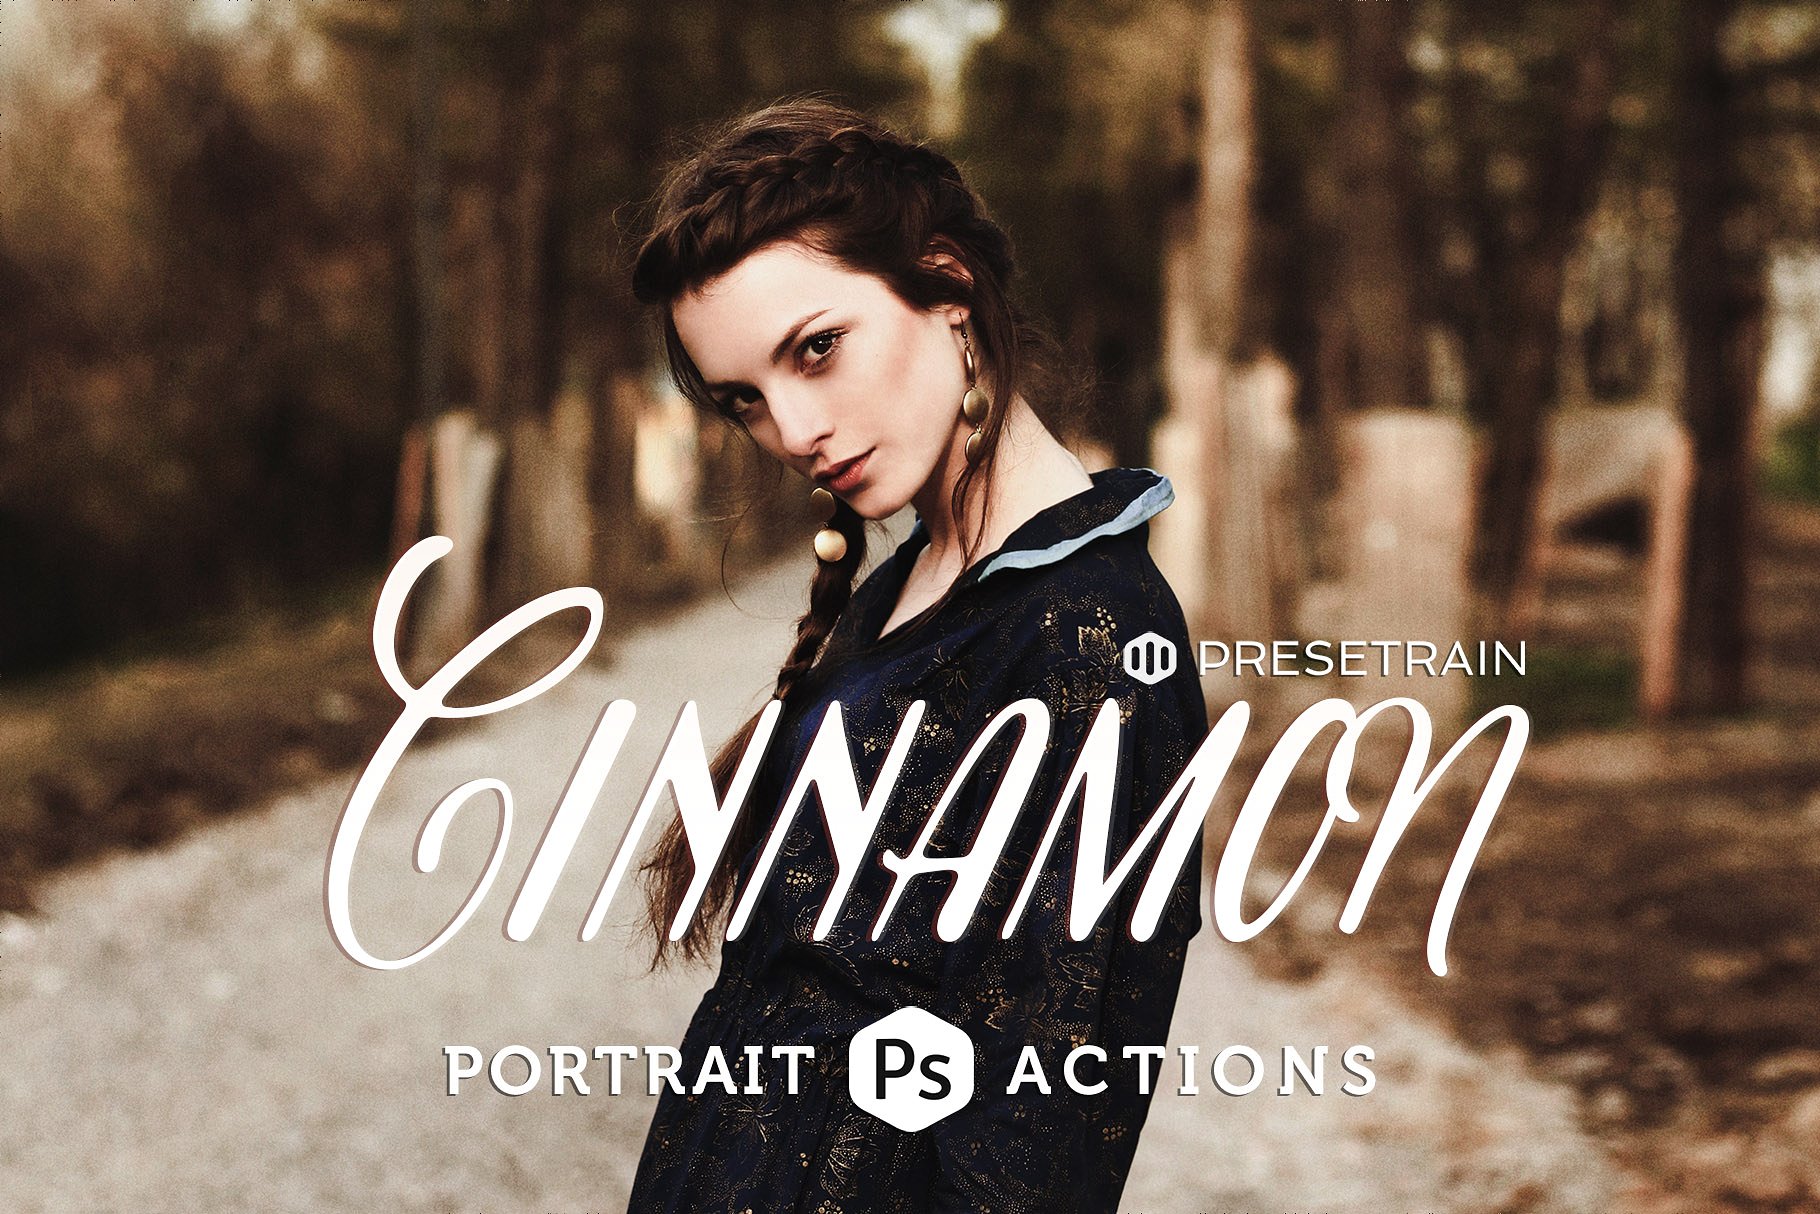 时尚大片人像照片后期处理效果PS动作 Cinnamon Portrait Photoshop Actions插图